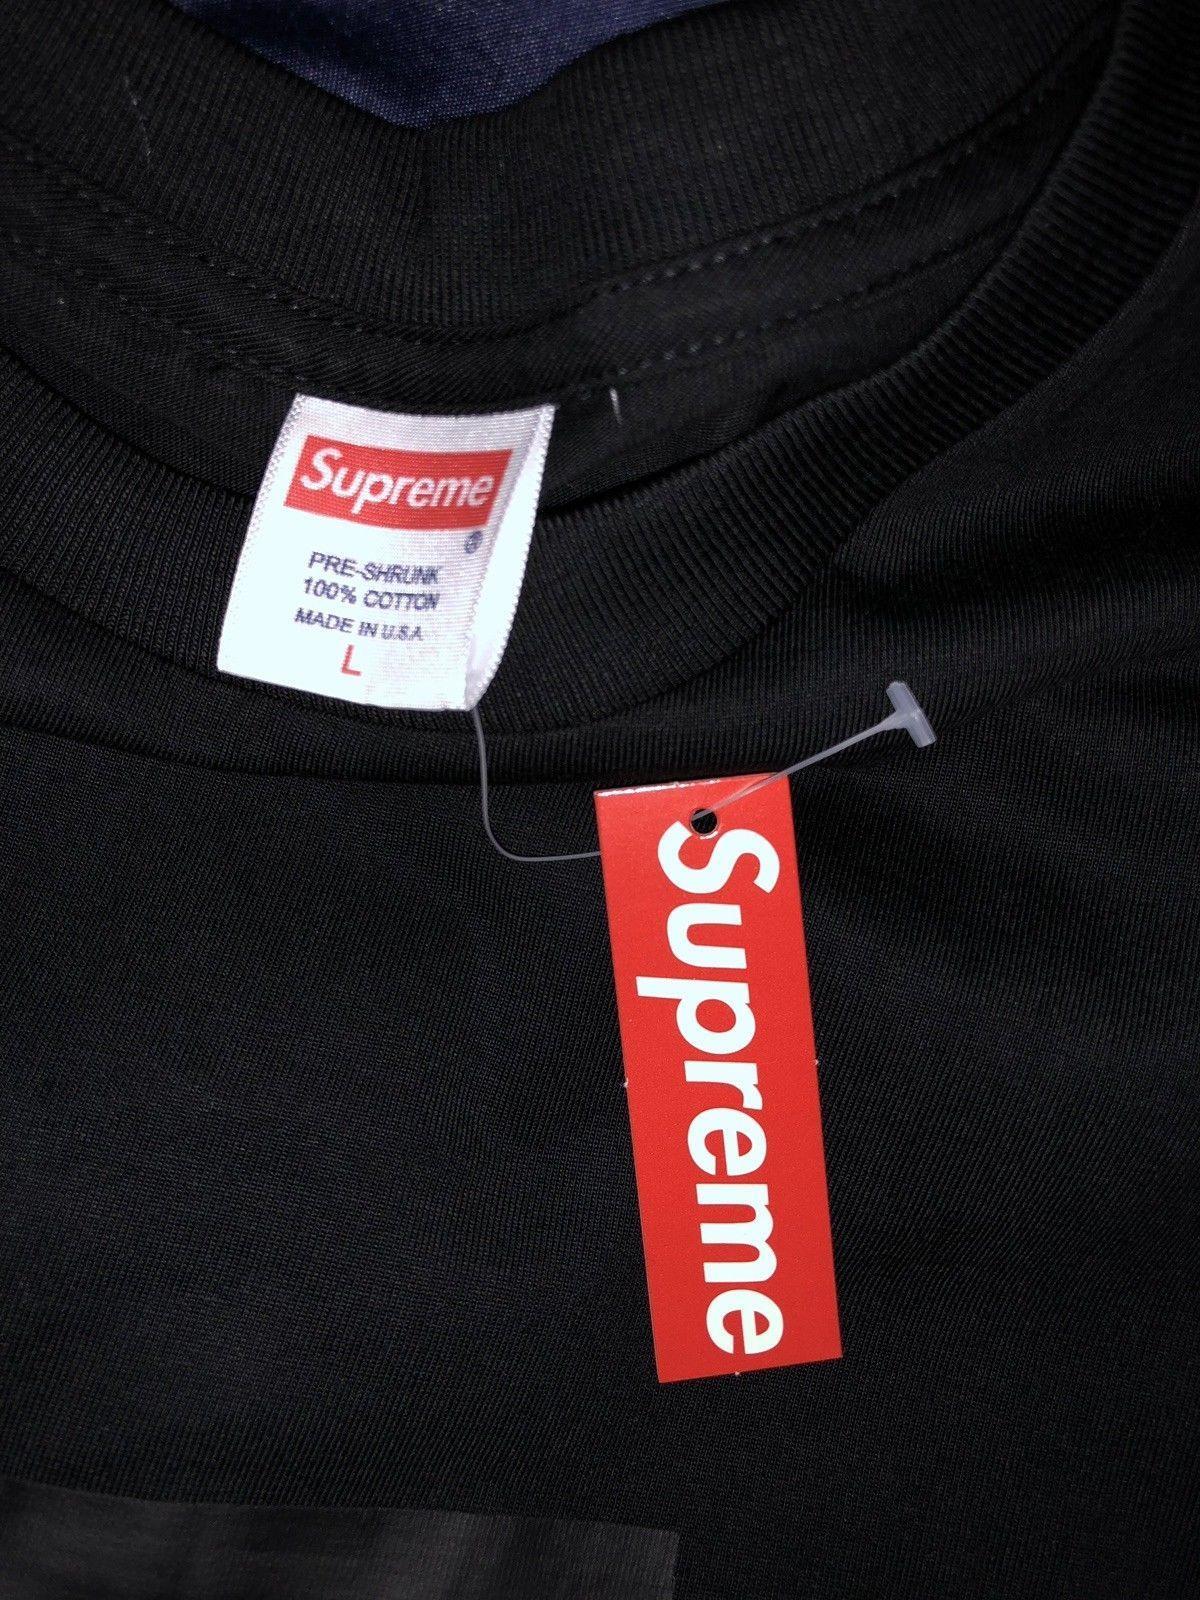 Supreme BAPE Polo Logo - Supreme Box Logo T Shirt Black Size L NEW W/ TAGS | Supreme, BAPE ...